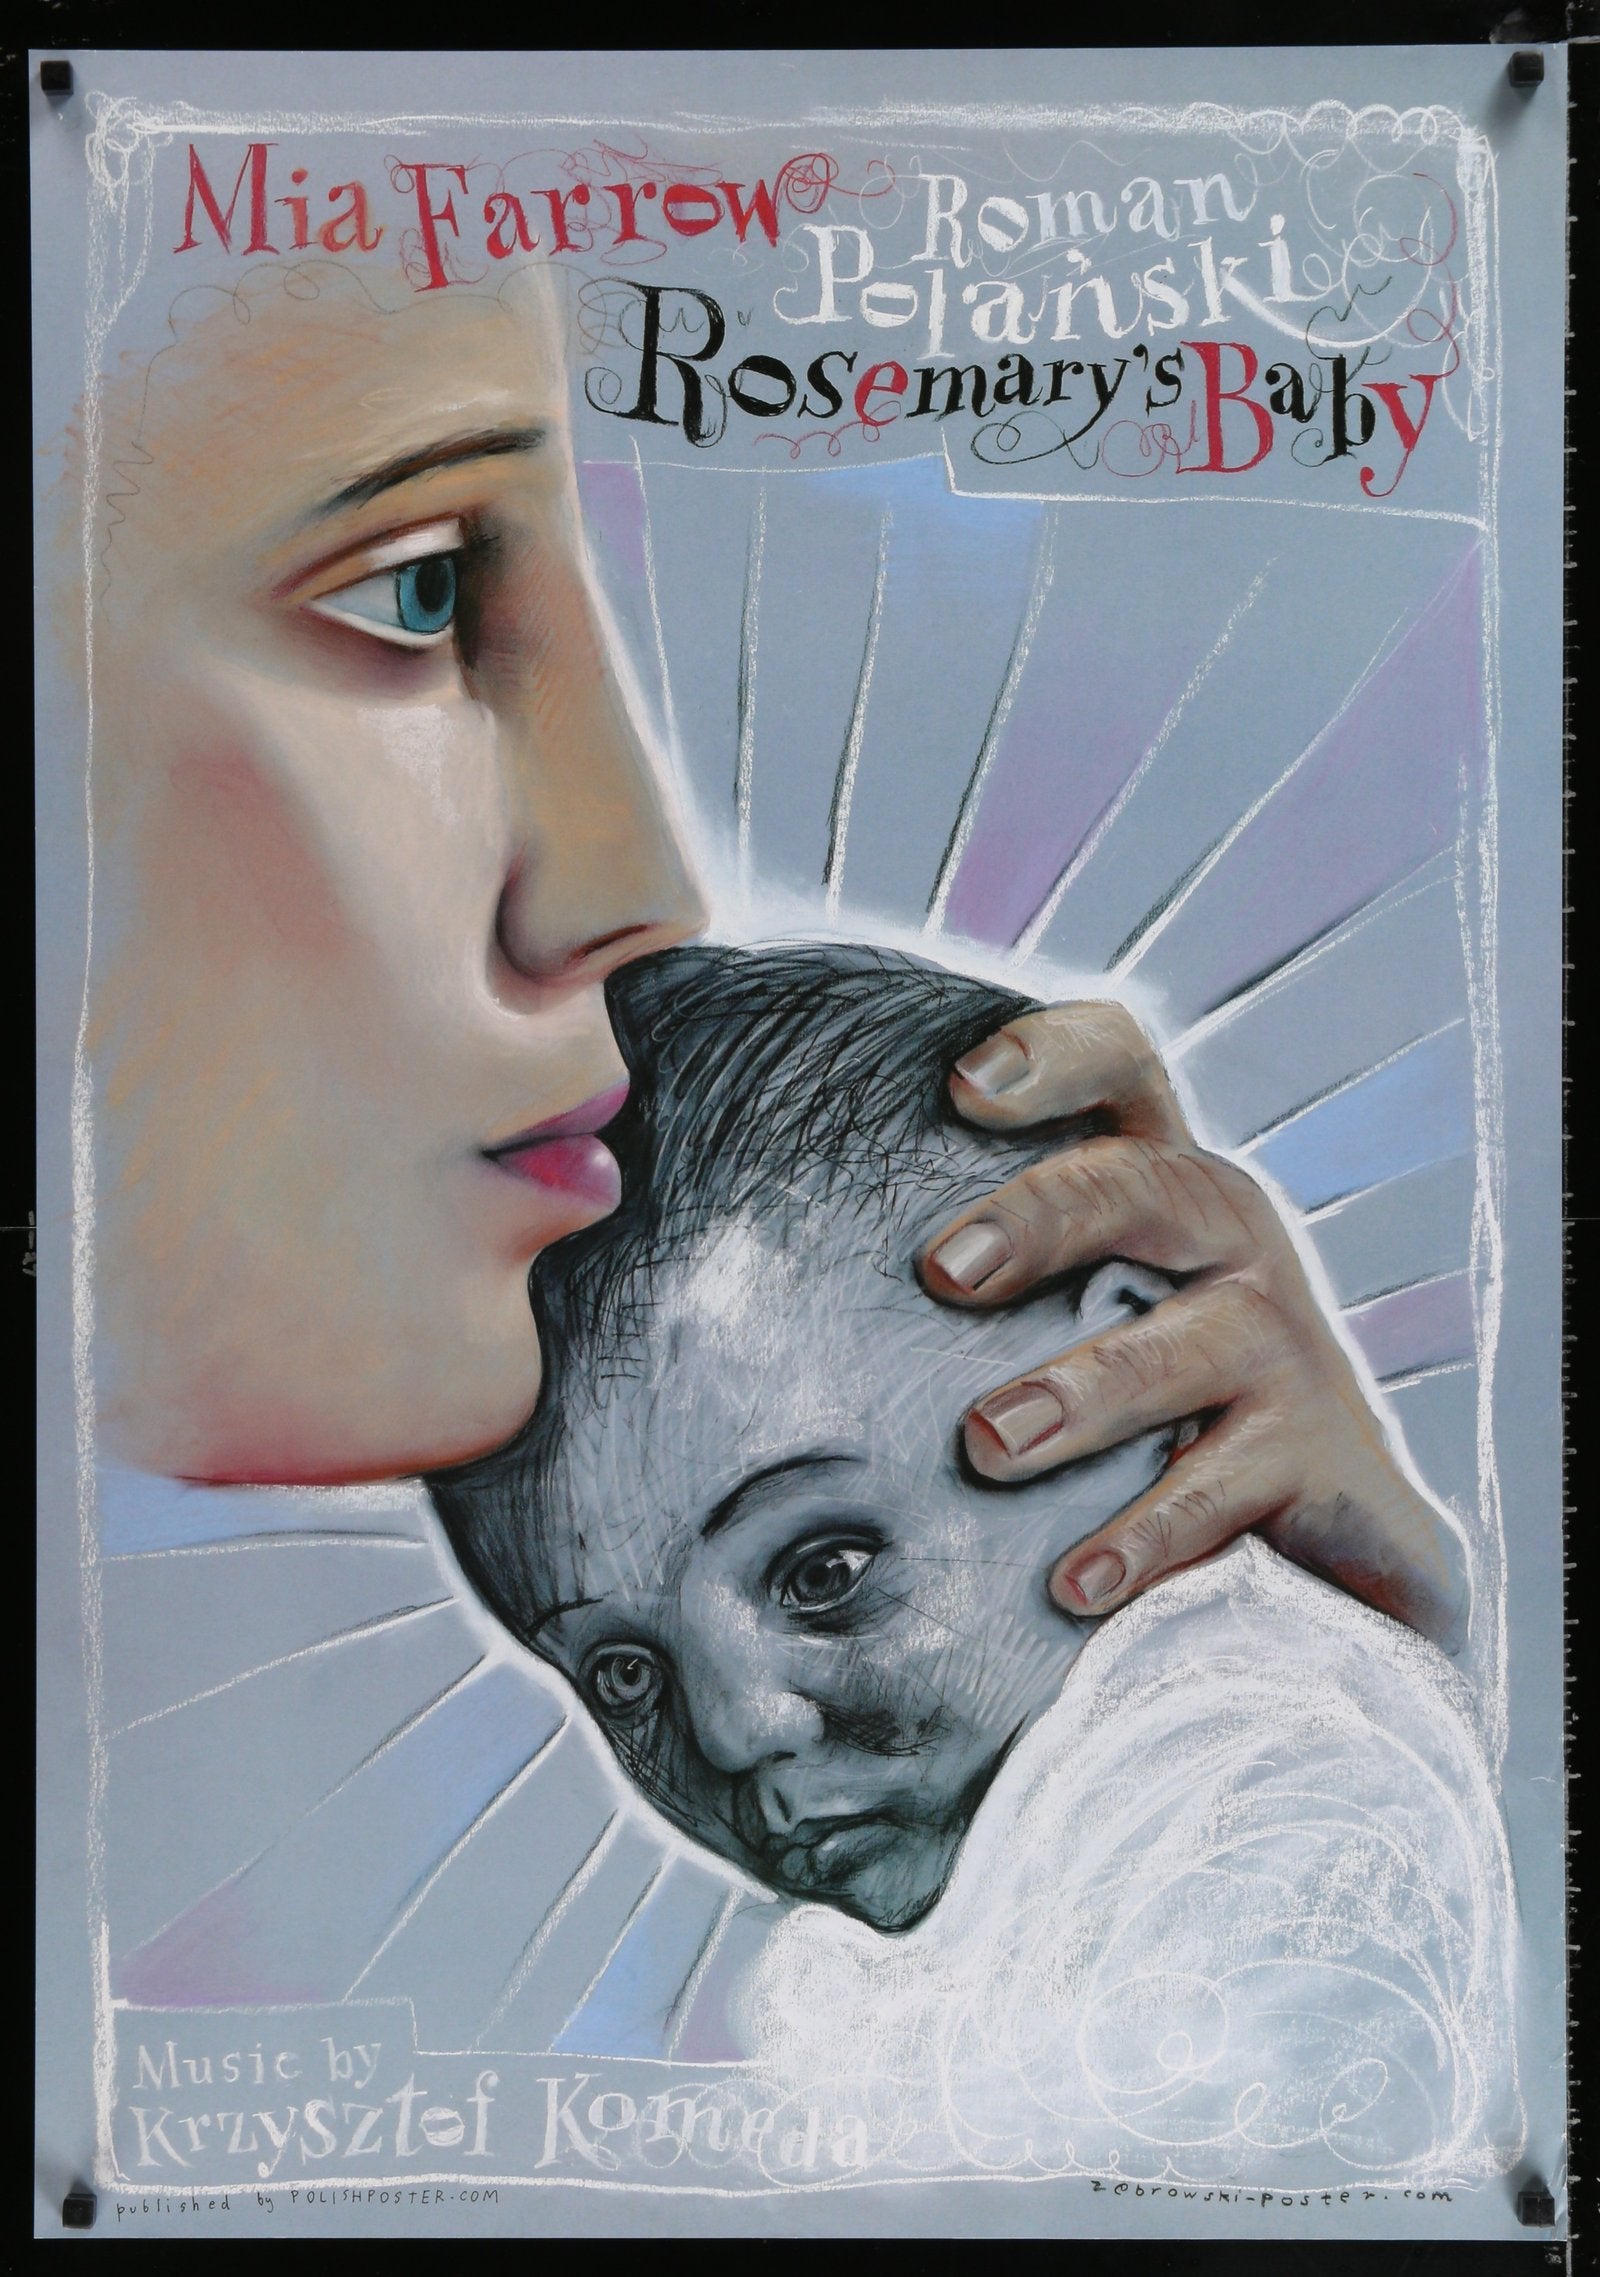 Rosemary's Baby (Sleeve)